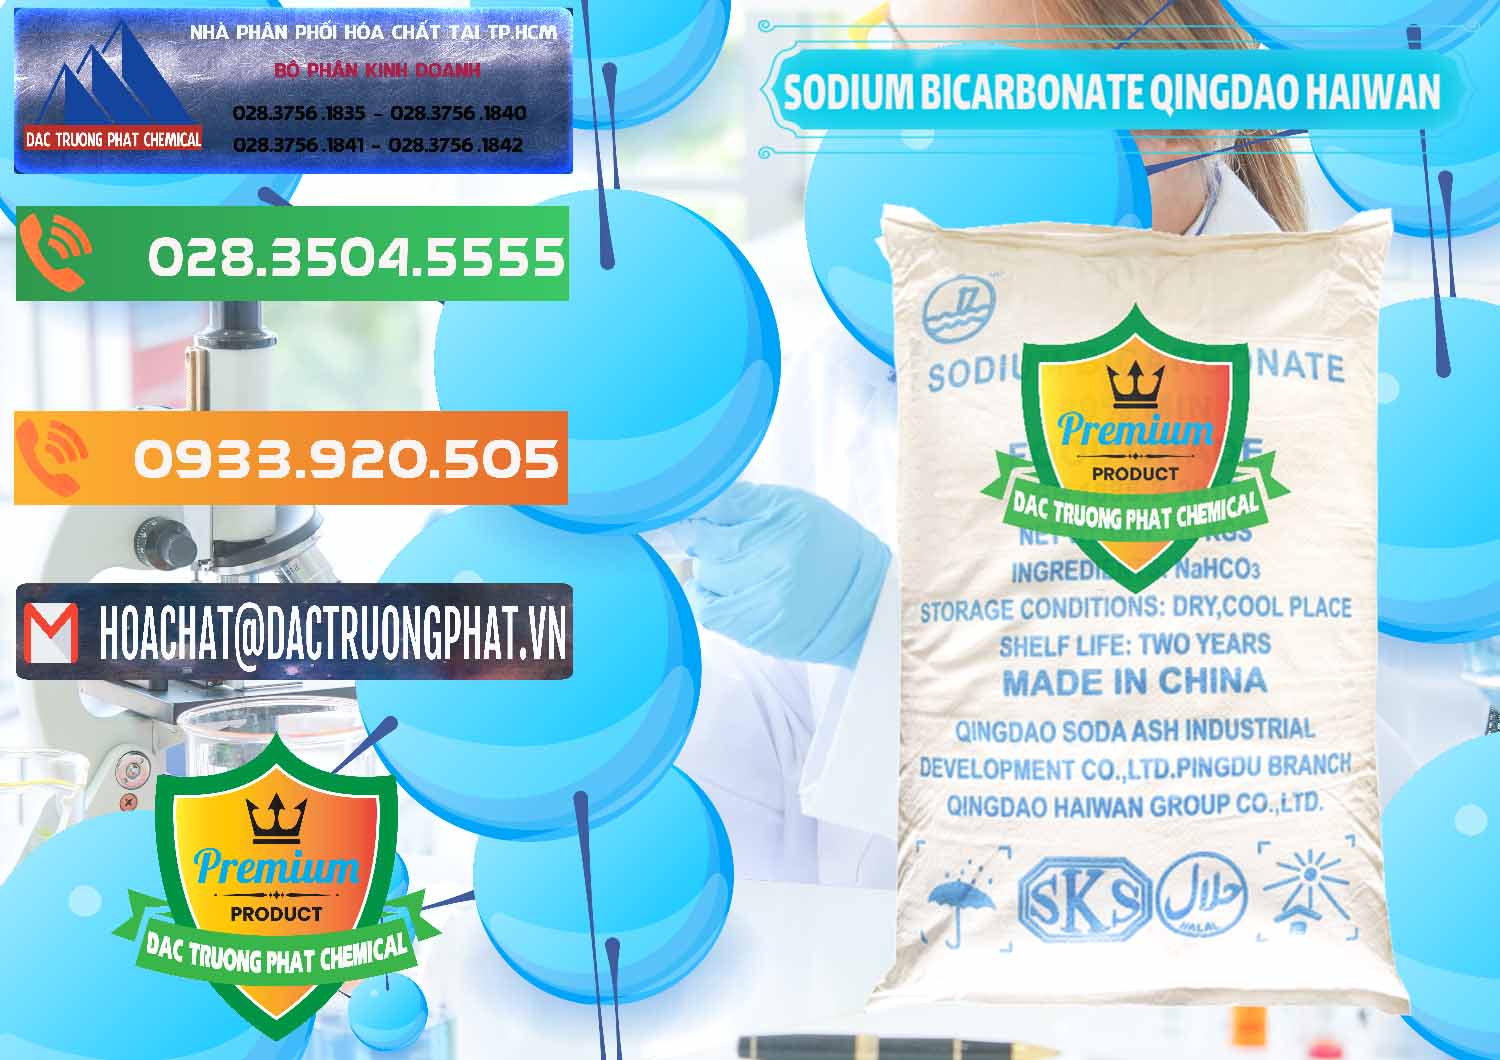 Đơn vị chuyên cung cấp ( bán ) Sodium Bicarbonate – Bicar NaHCO3 Food Grade Qingdao Haiwan Trung Quốc China - 0258 - Nơi phân phối ( cung ứng ) hóa chất tại TP.HCM - hoachatxulynuoc.com.vn